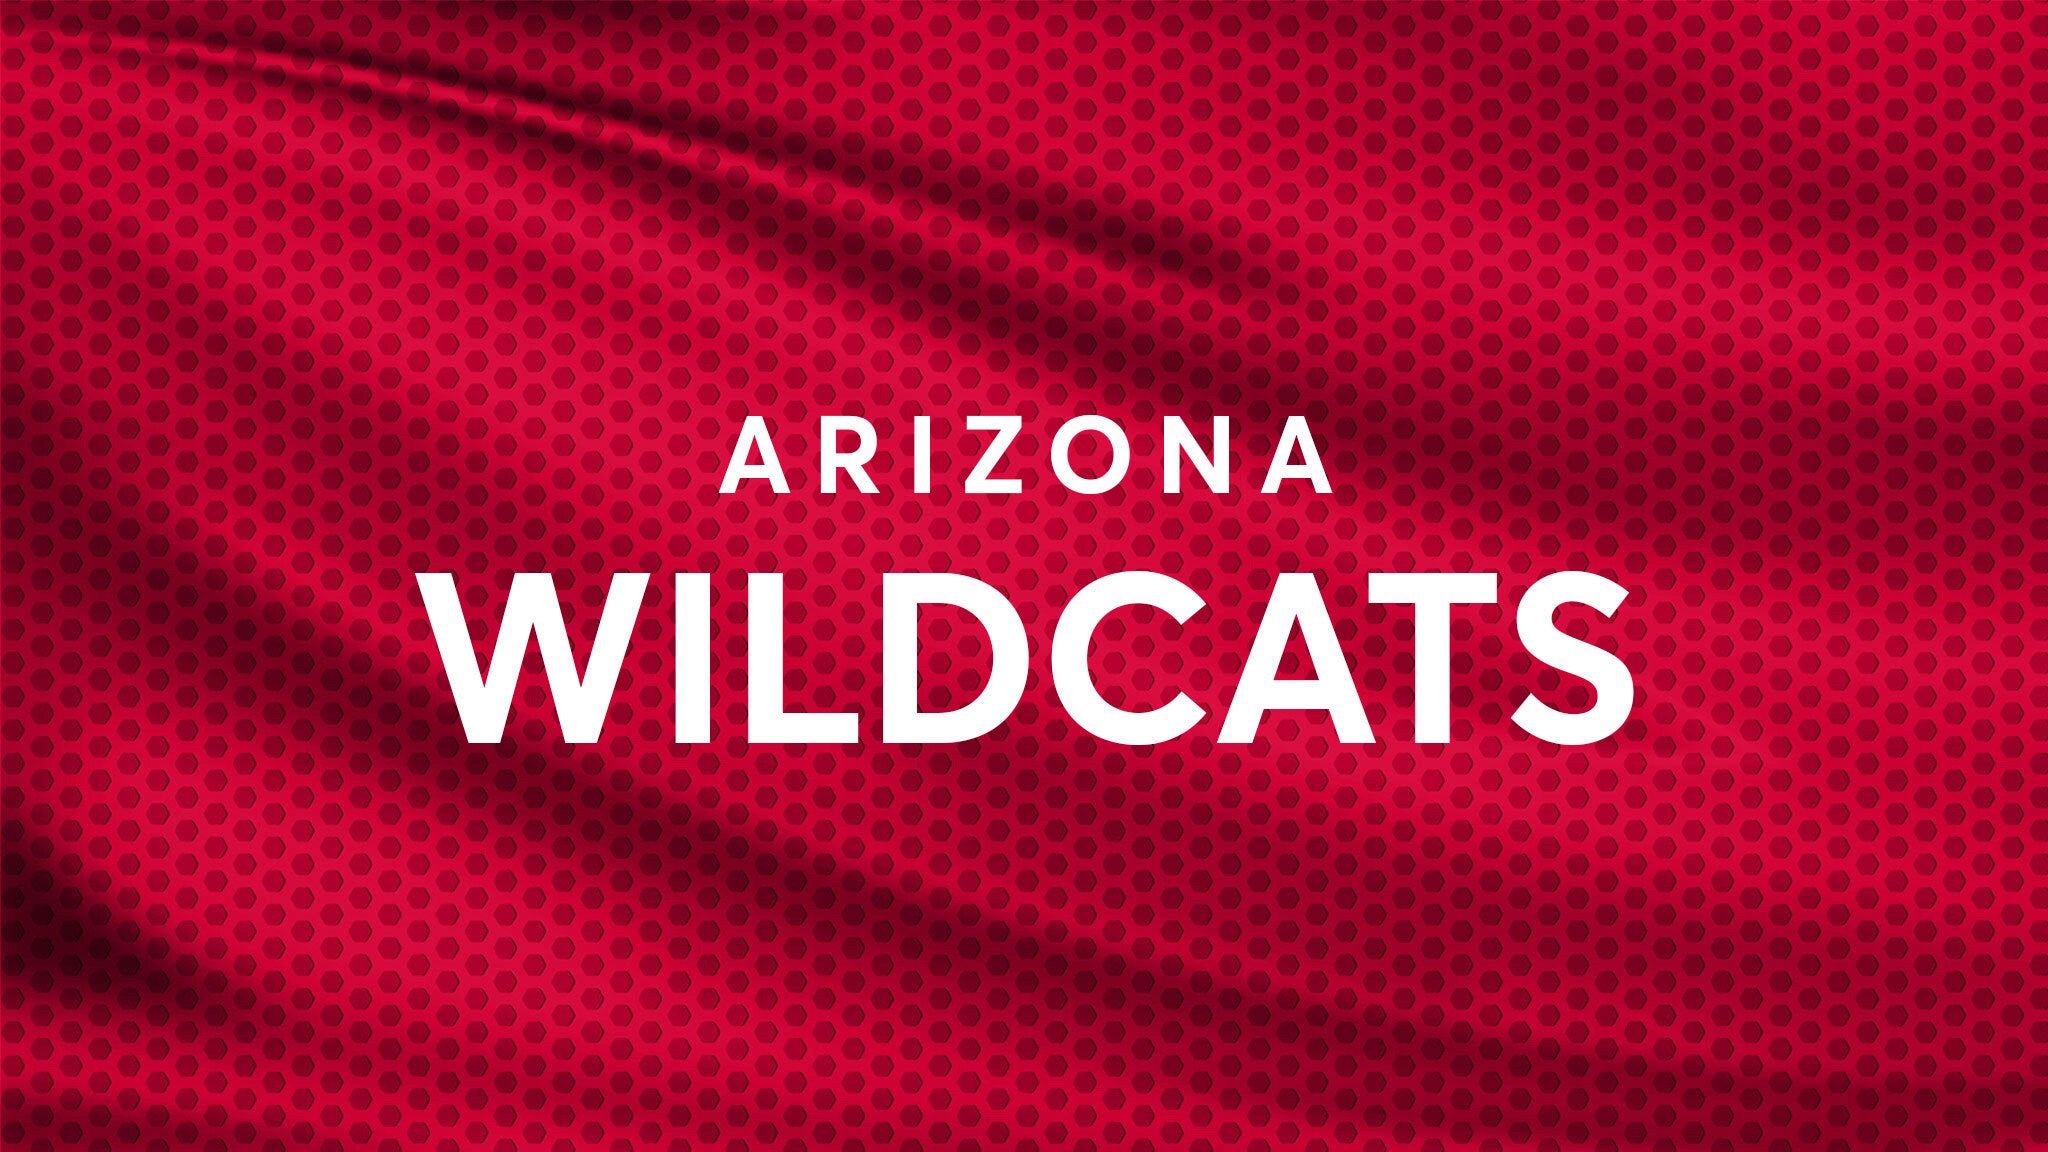 Arizona Wildcats Football vs. Colorado Buffaloes Football